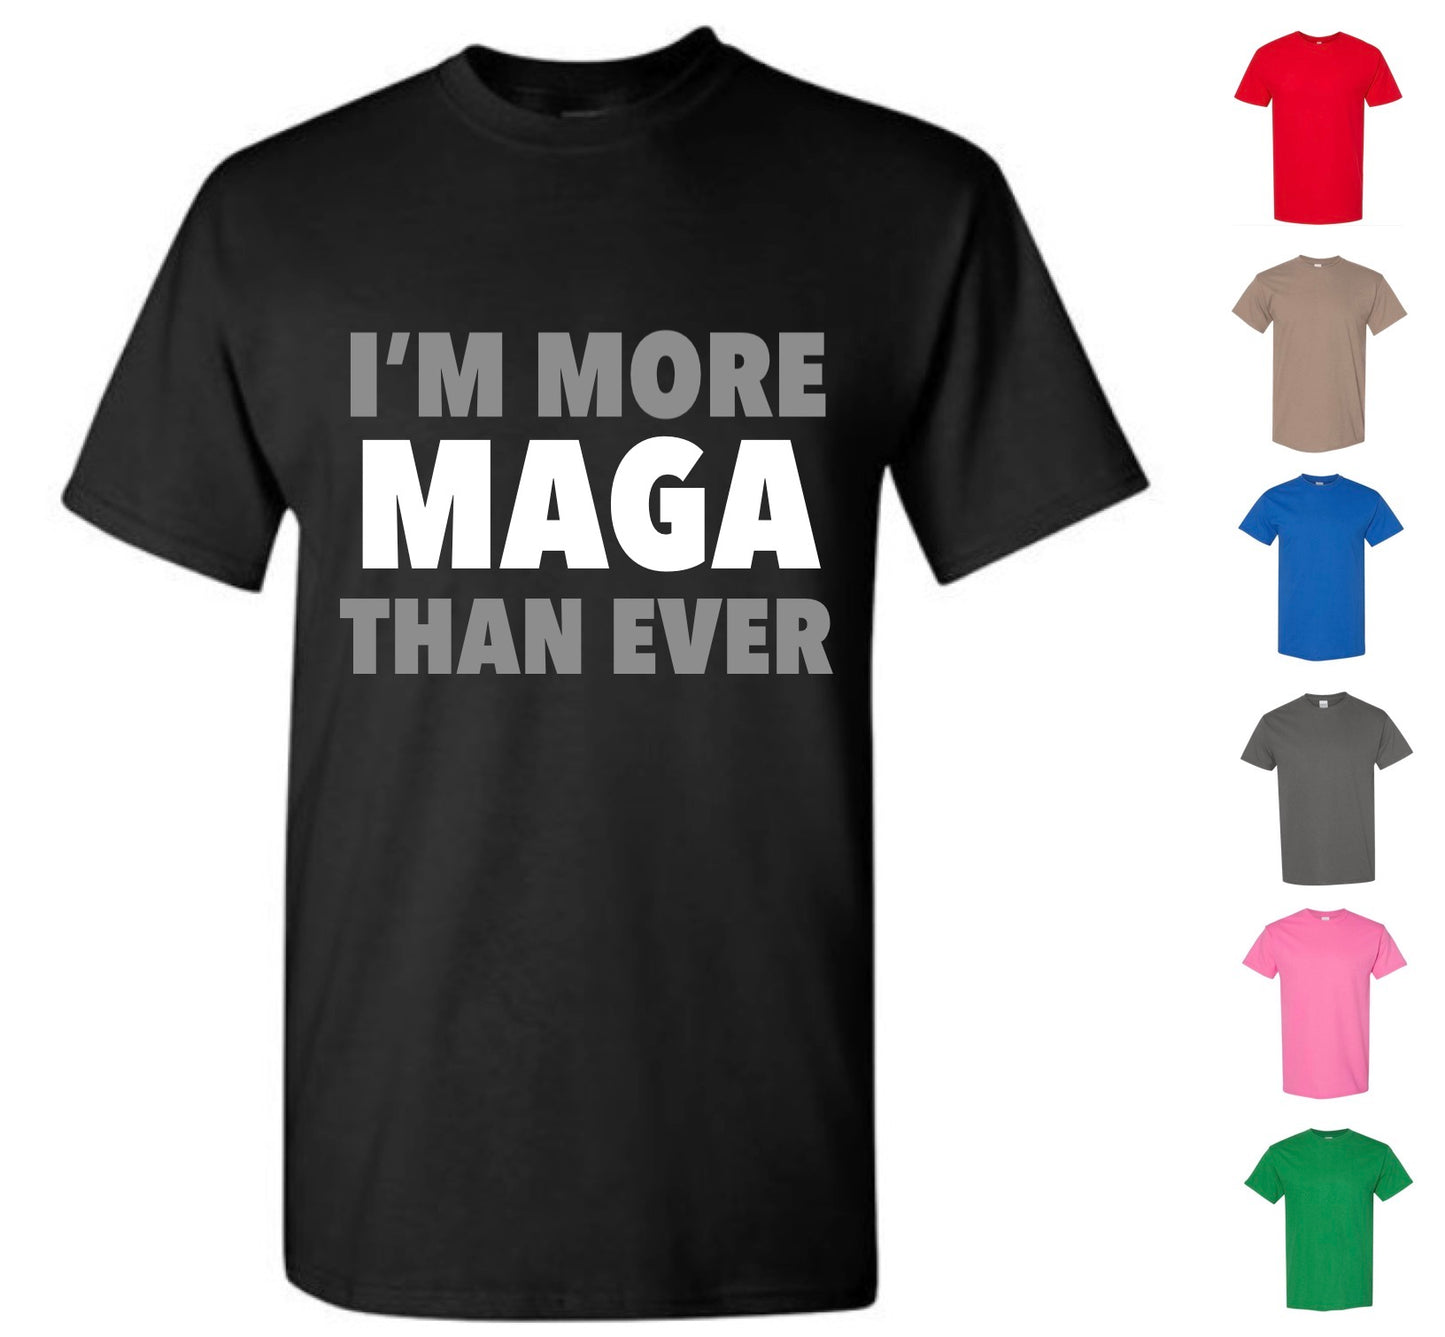 I'm More MAGA Than Ever Shirt — Free Shipping!